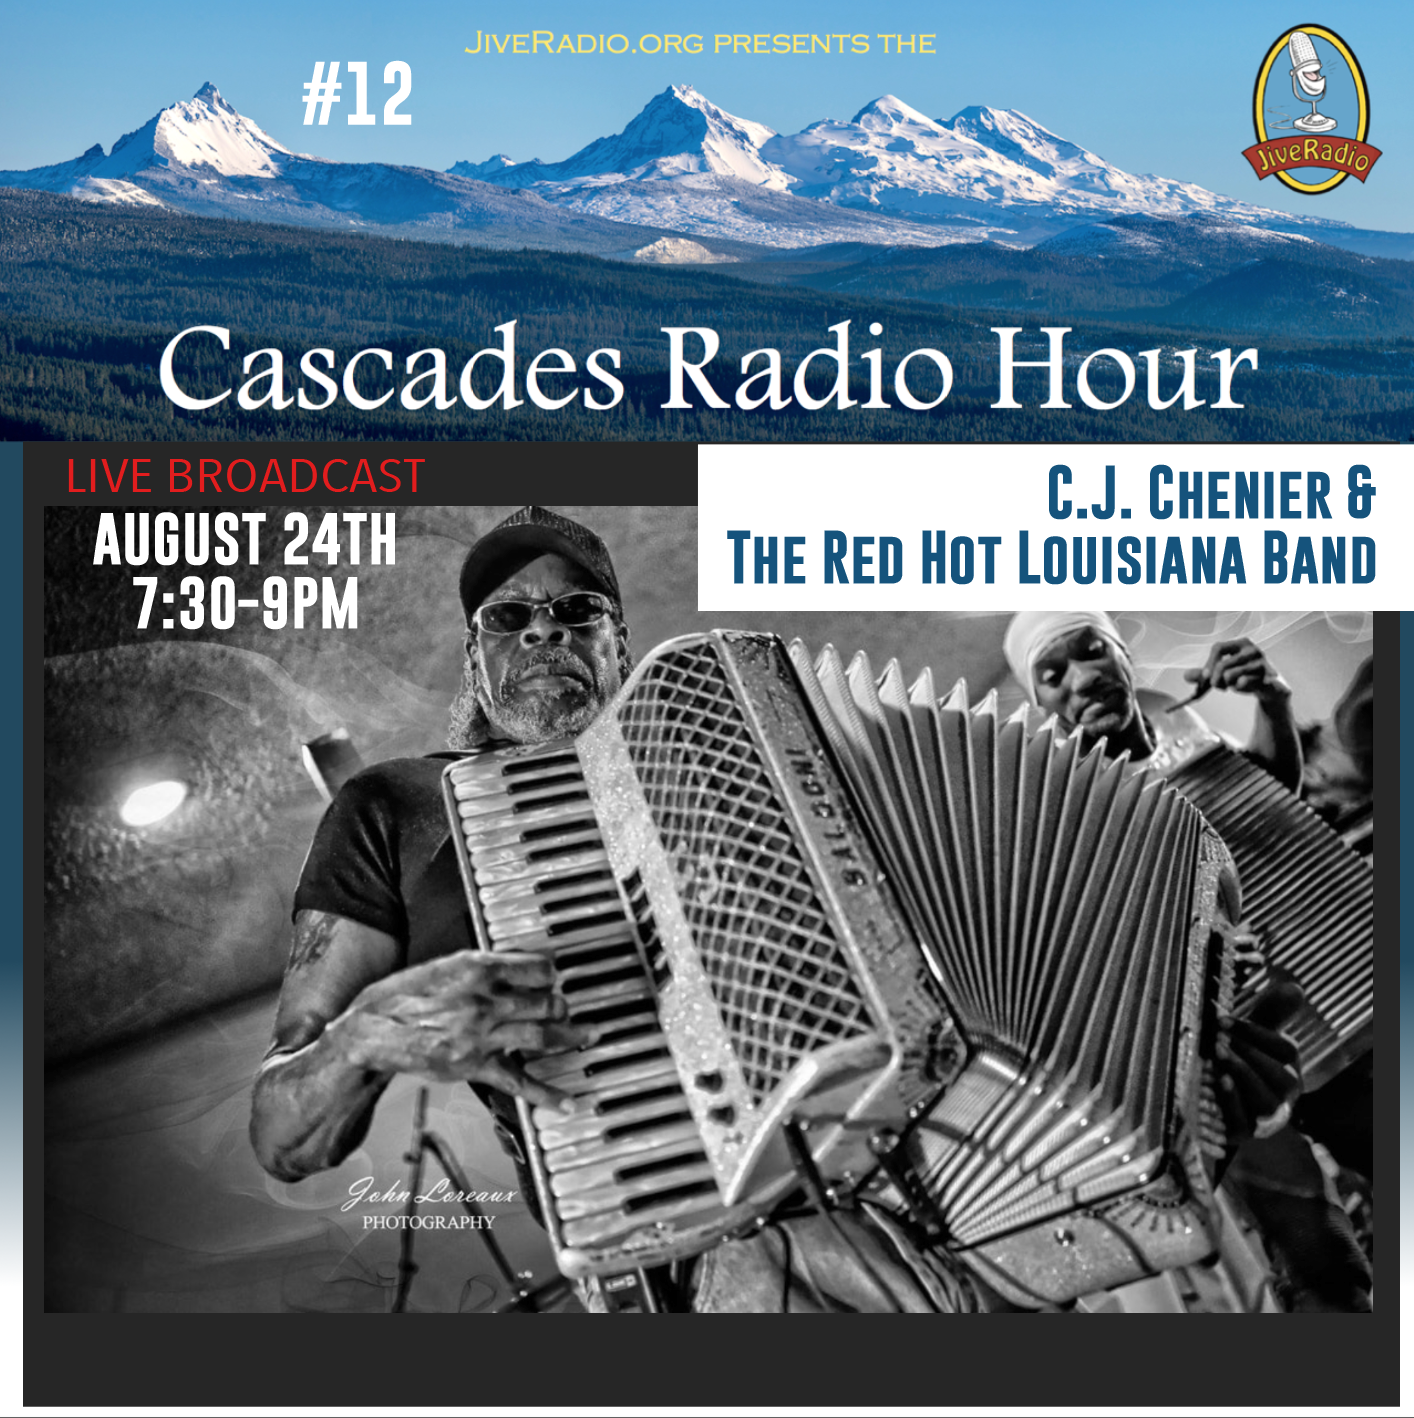 Cascades Radio Hour #12: C.J. Chenier & The Red Hot Louisiana Band